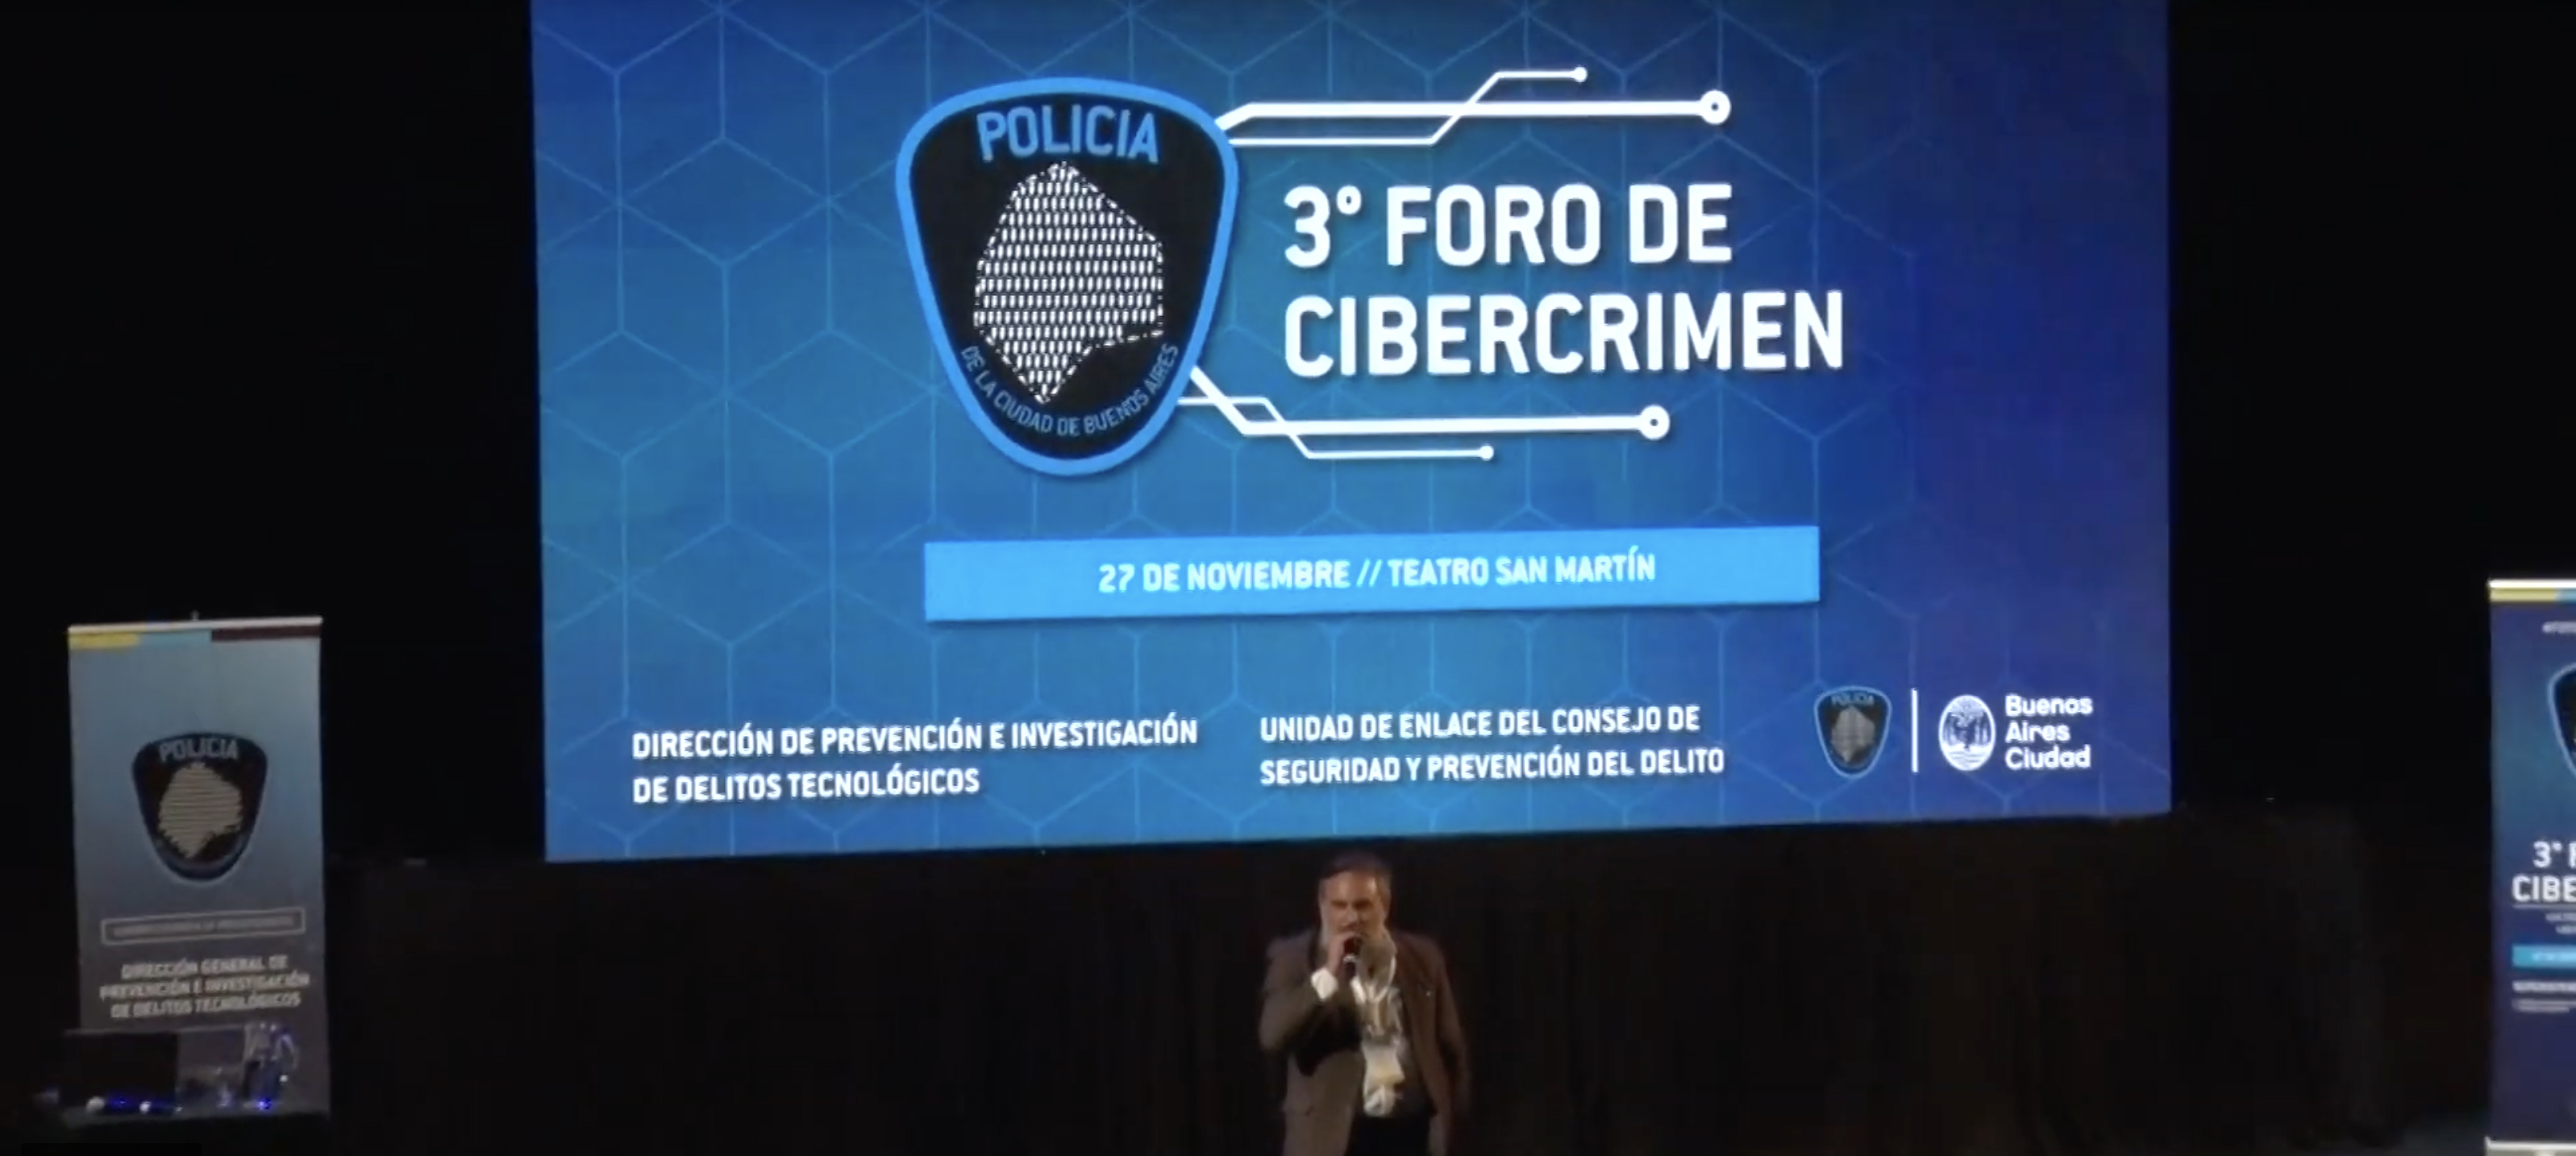 Nueva edición del “Foro de Cibercrimen”